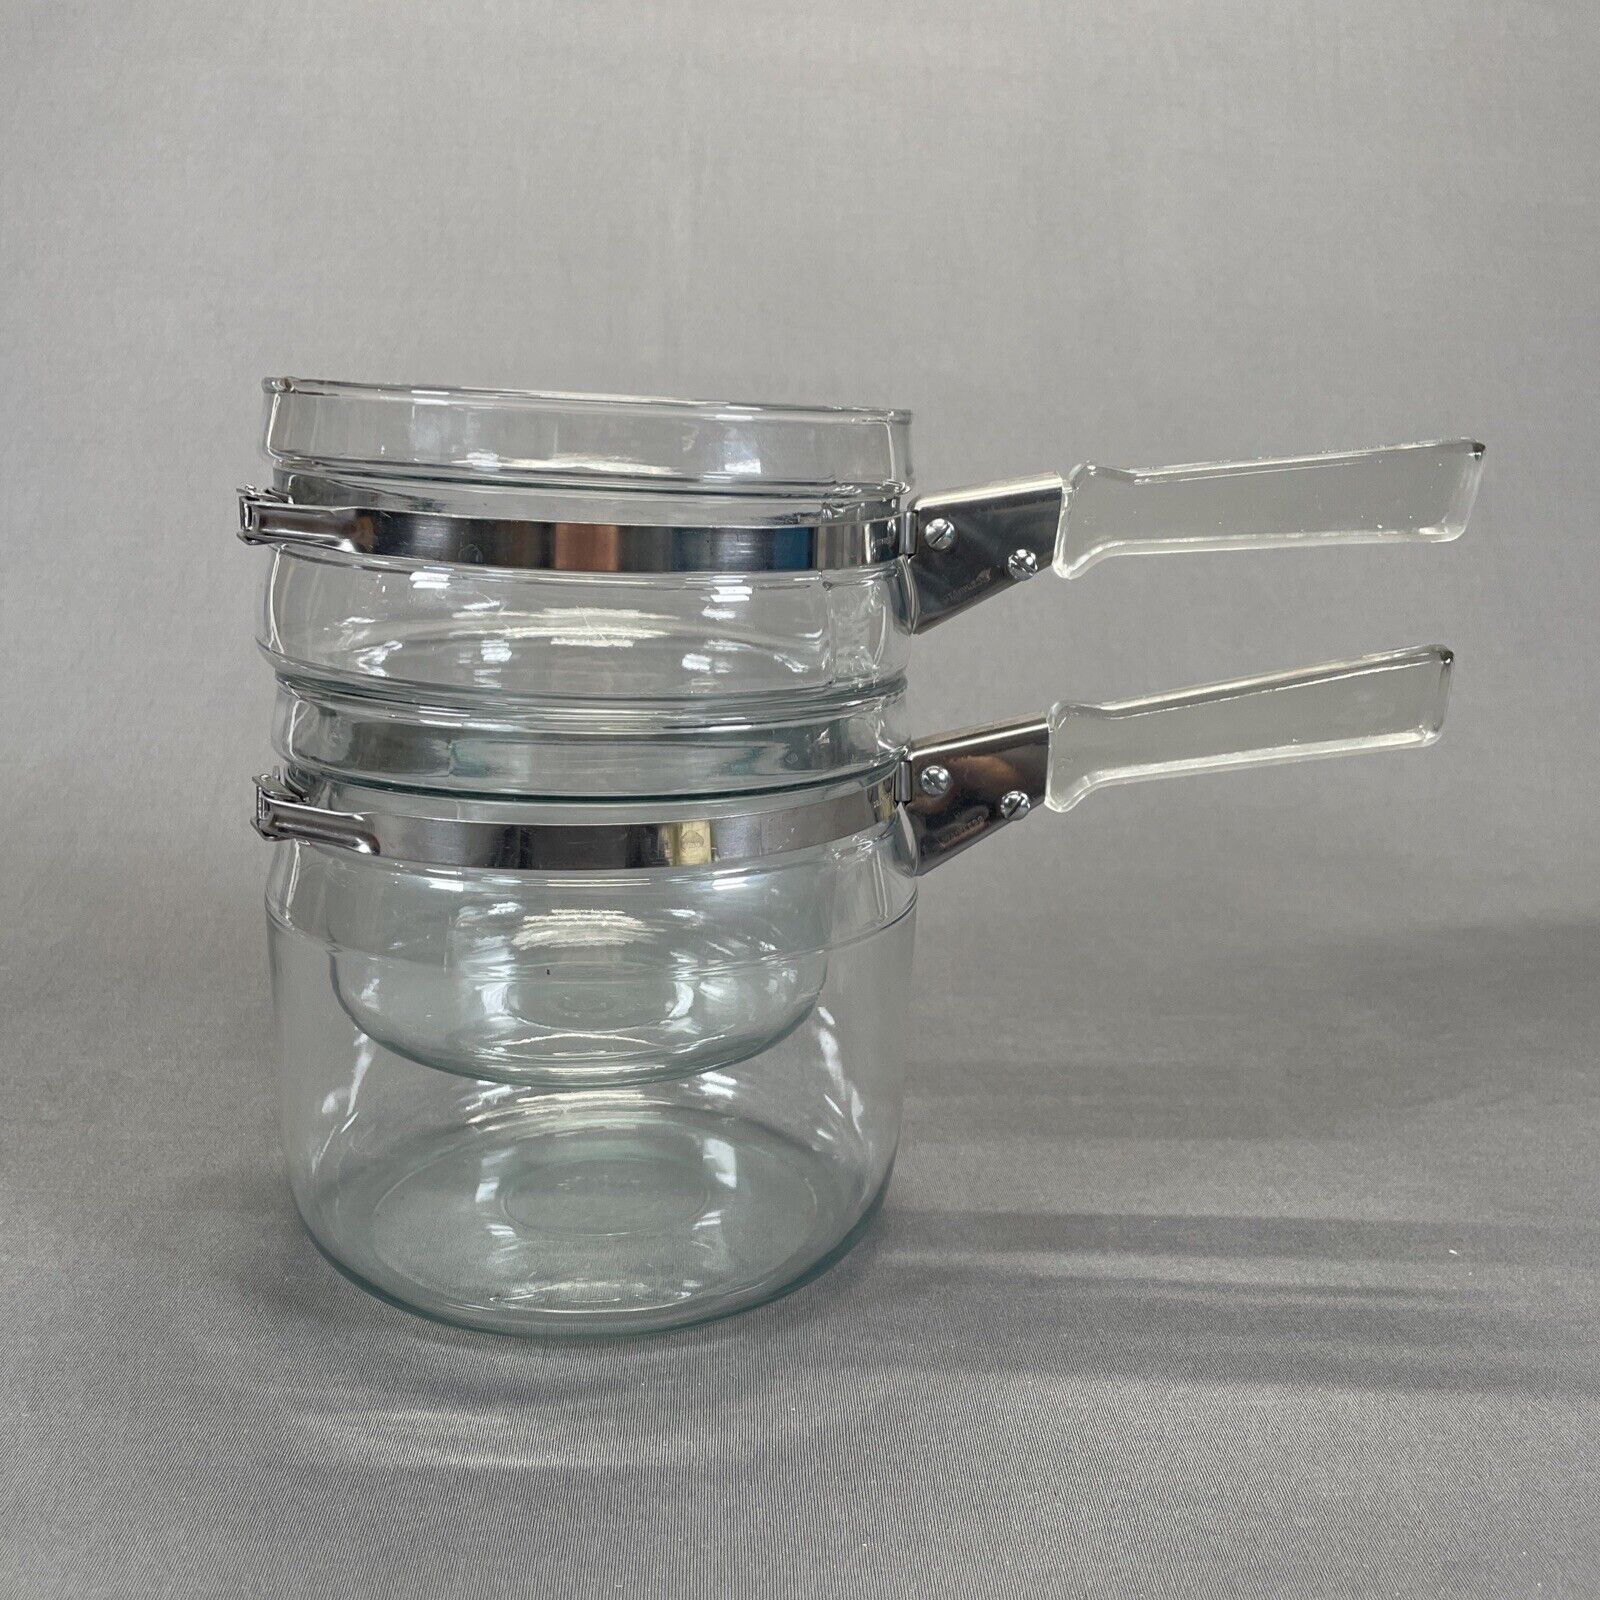 Vintage Pyrex Flameware Double Boiler Complete Set 3 Pieces Glass Handle